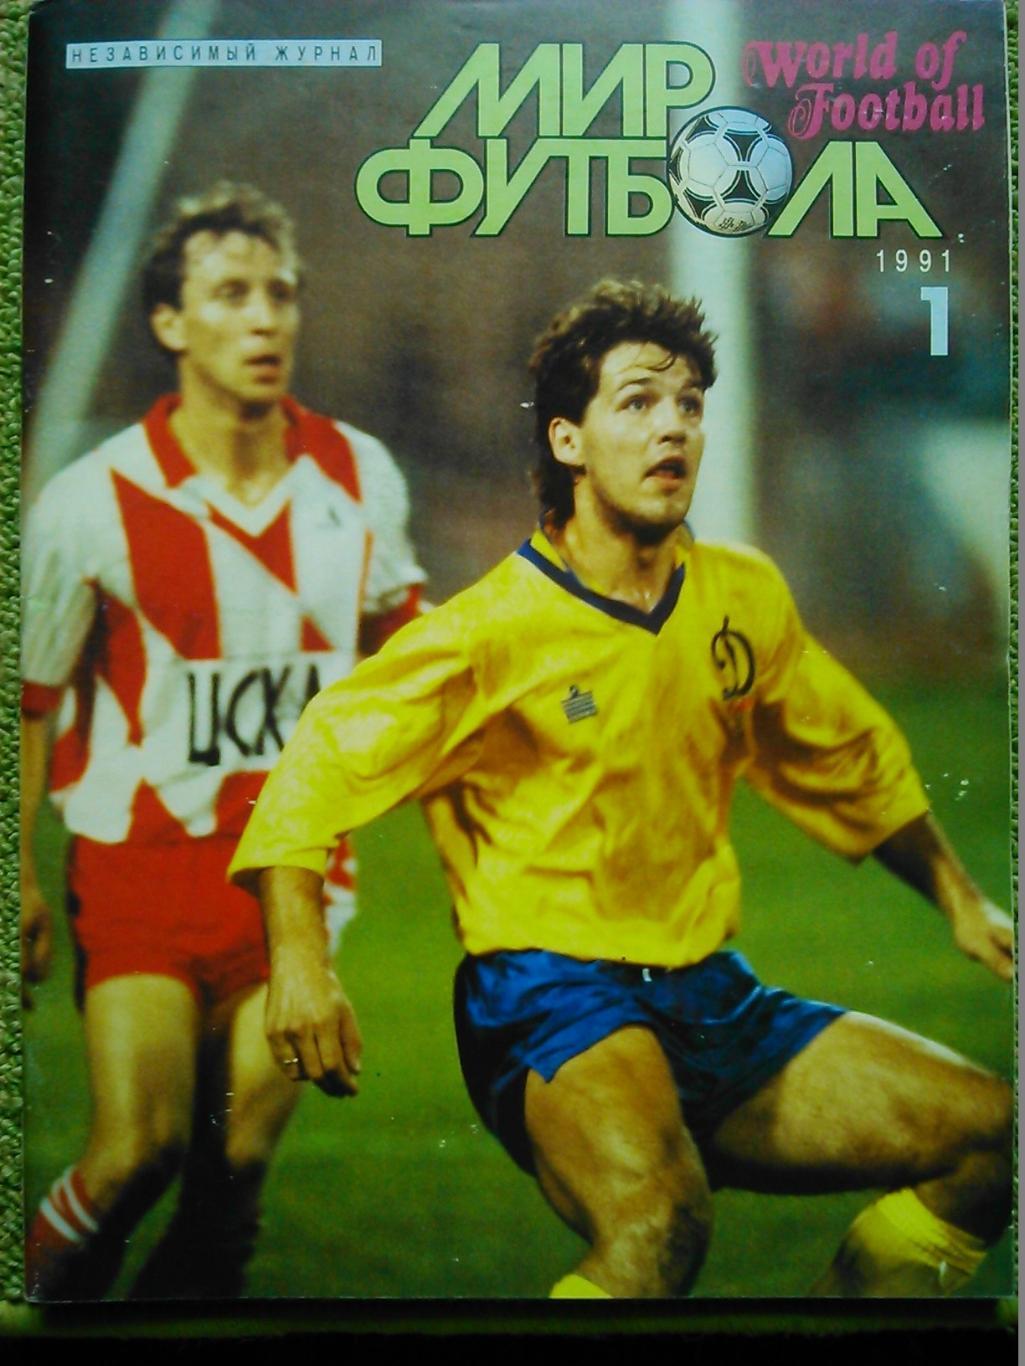 ФУТБОЛ в ЛИЦАХ №3 2006. журнал украинского футбола. Оптом скидки до 45%! 1